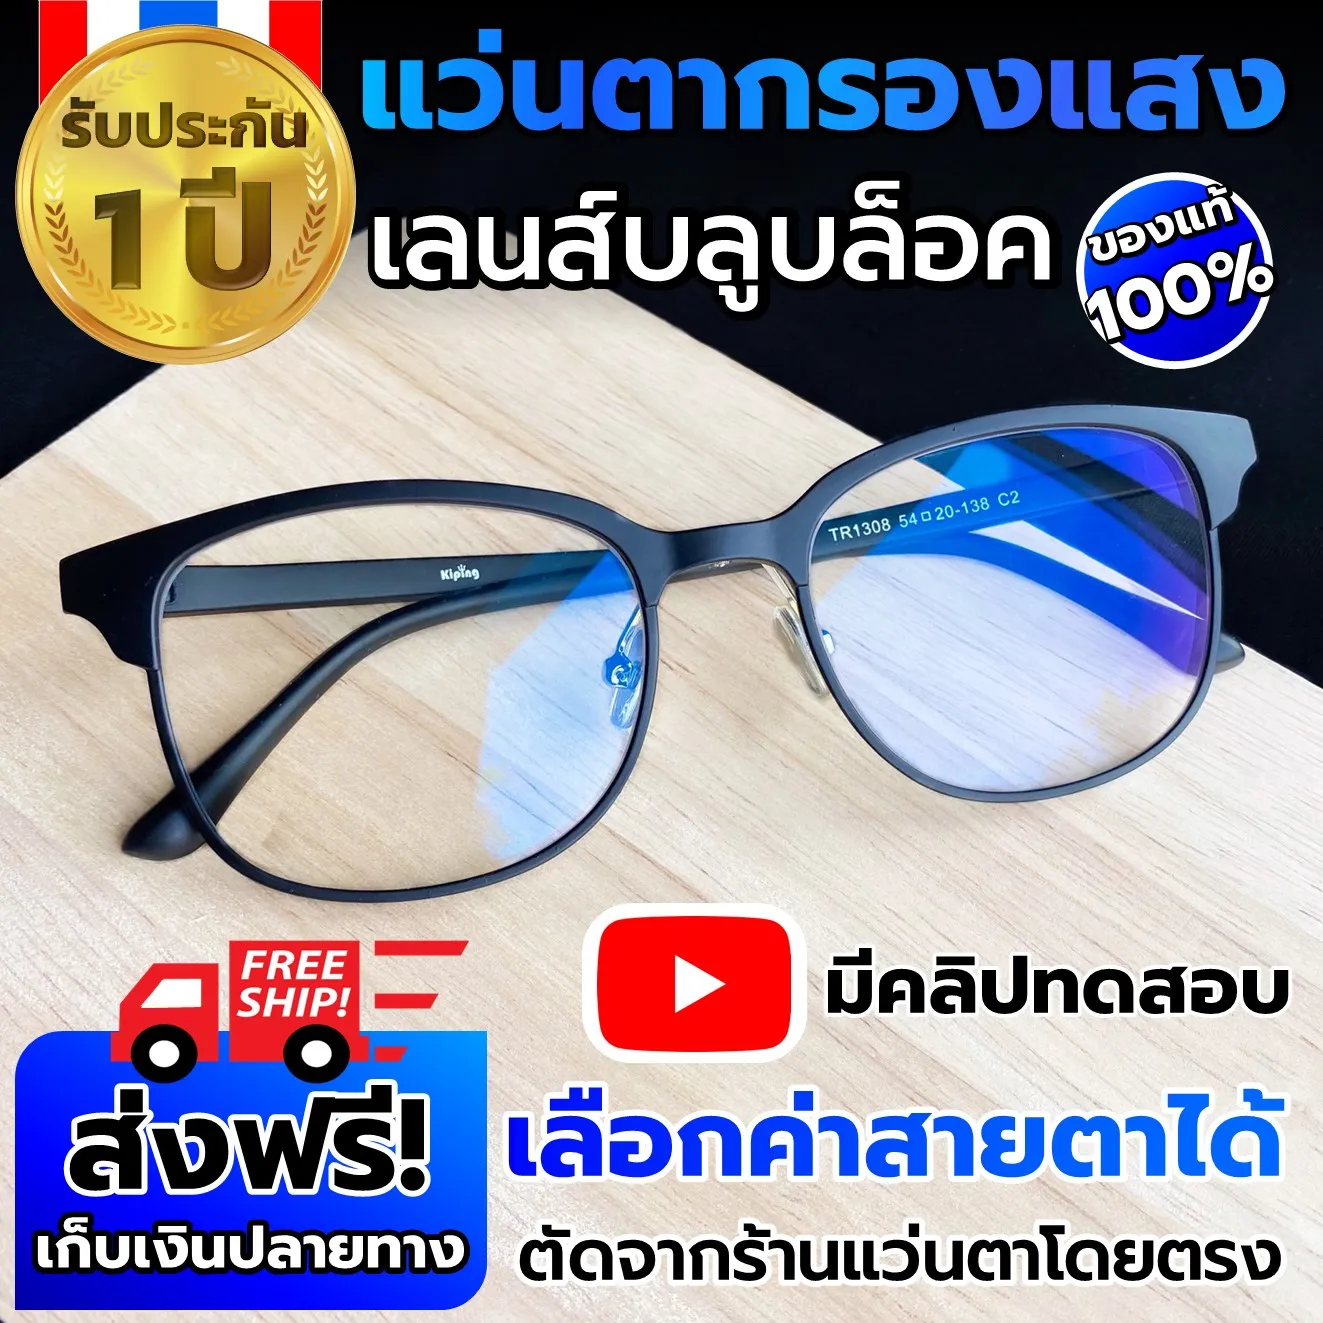 แว่นกรองแสง สีฟ้า แว่นตากรองแสง แว่นสายตากรองแสง Blue block แว่นสายตา สั้น ผู้ชาย/หญิง แว่นกรองแสงคอมพิวเตอร์ แว่นตัดแสงสีฟ้า แว่นกันแสงสีฟ้า แว่นกันแสงคอม แว่นถนอมสายตา แว่นใส่เล่นคอมพิวเตอร์